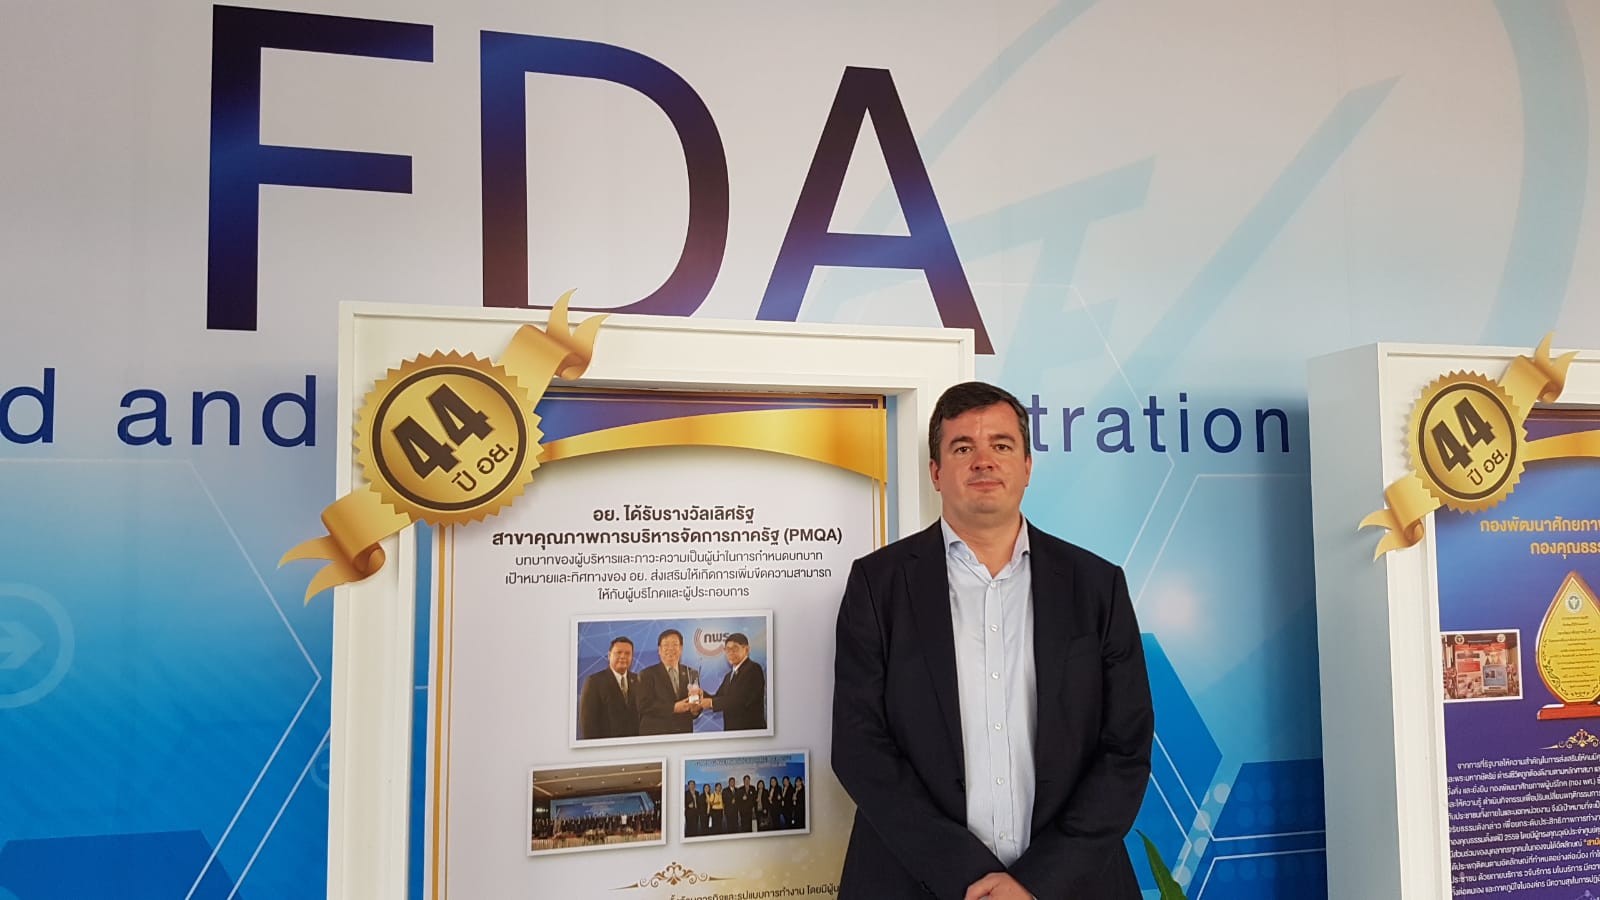 Robin Roy Krigslund-Hansen besucht die FDA Thailand im Jahr 2019